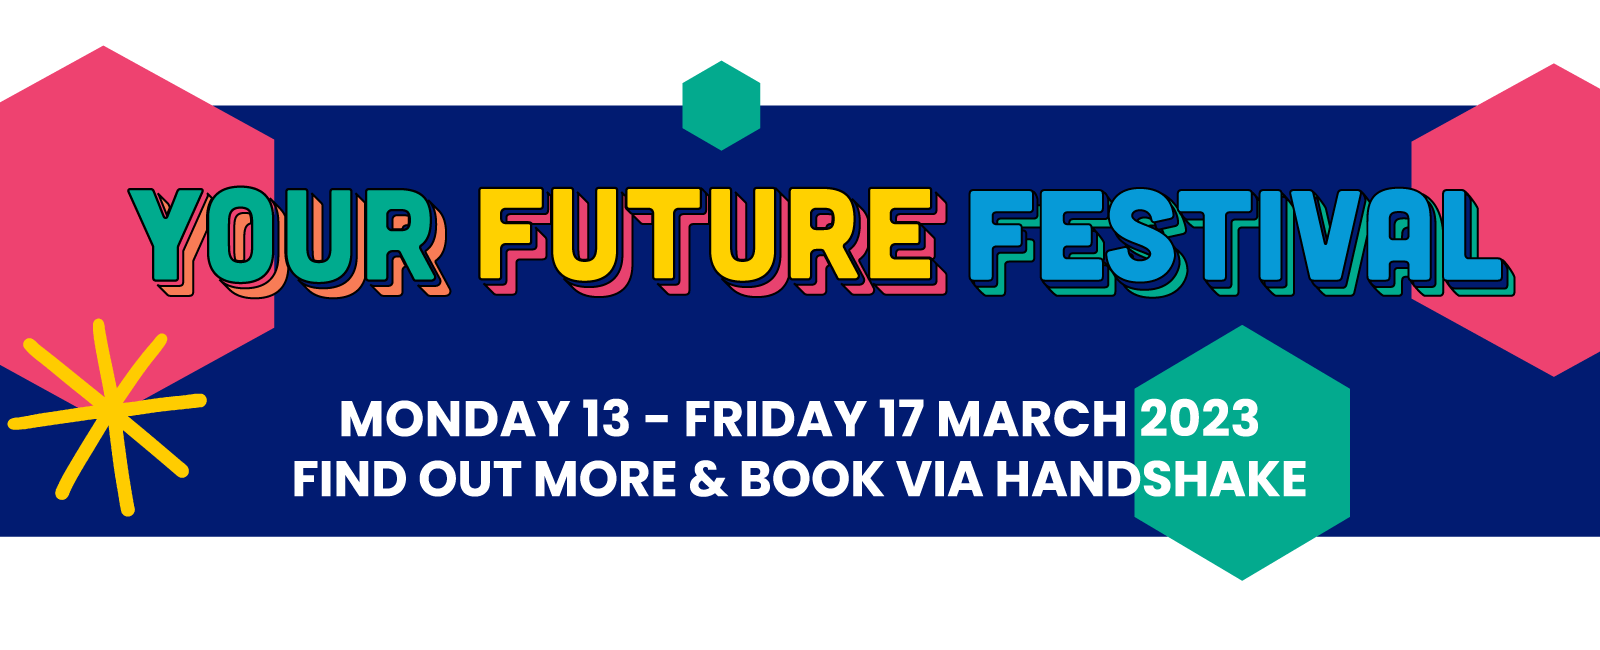 Your Future Festival